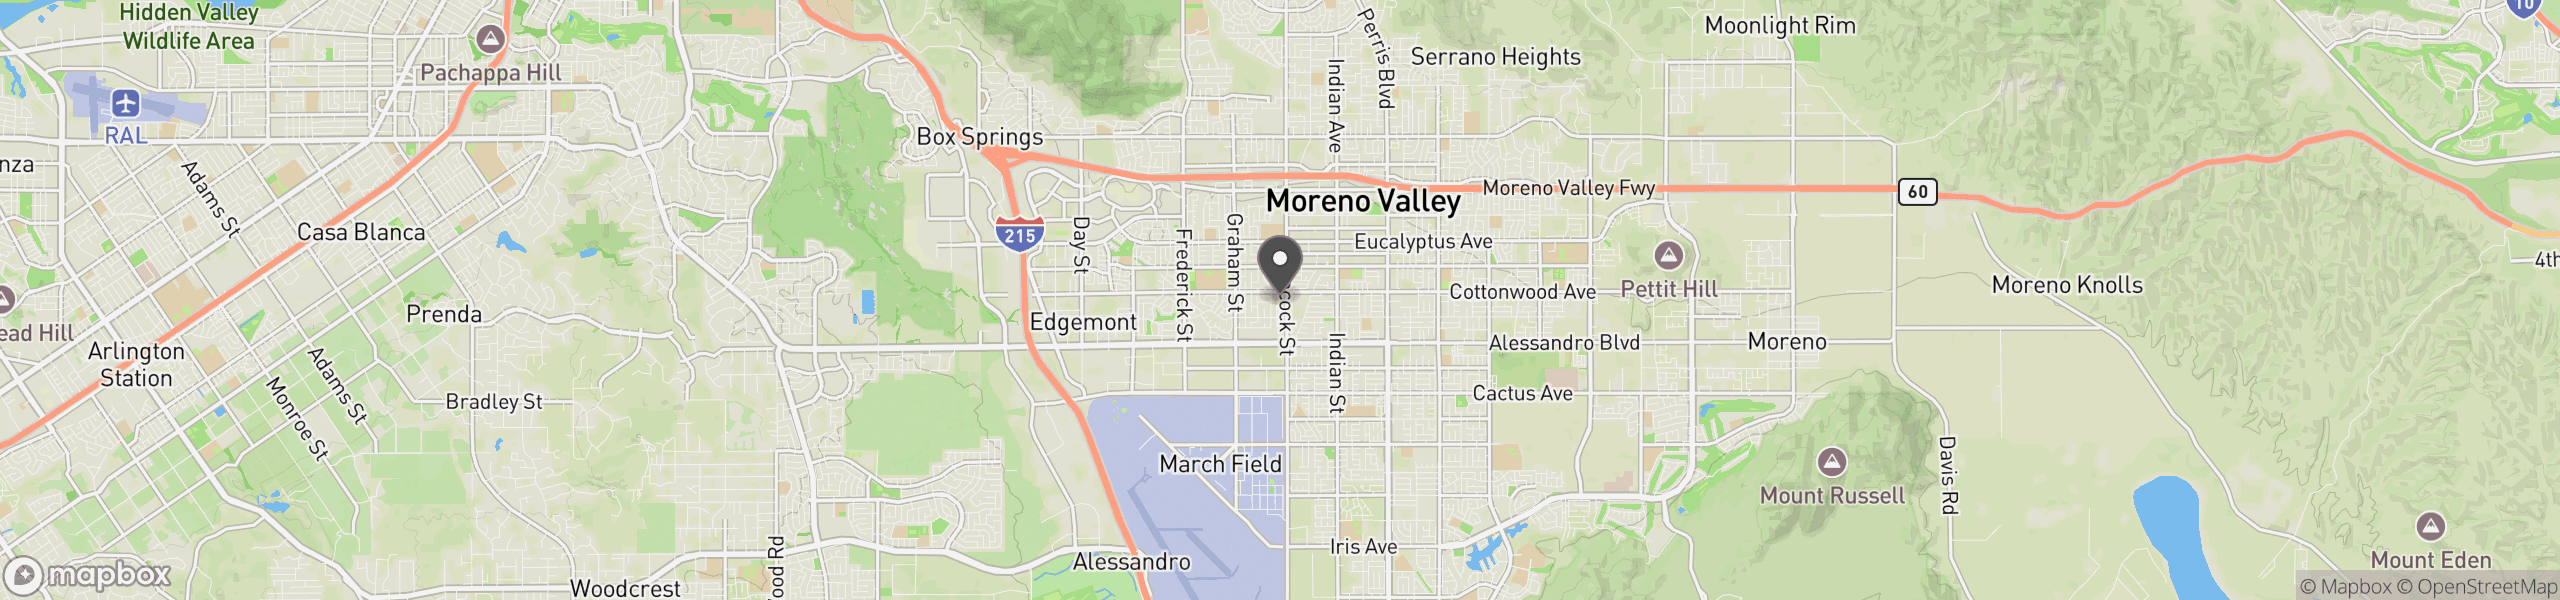 Moreno Valley, CA 92553